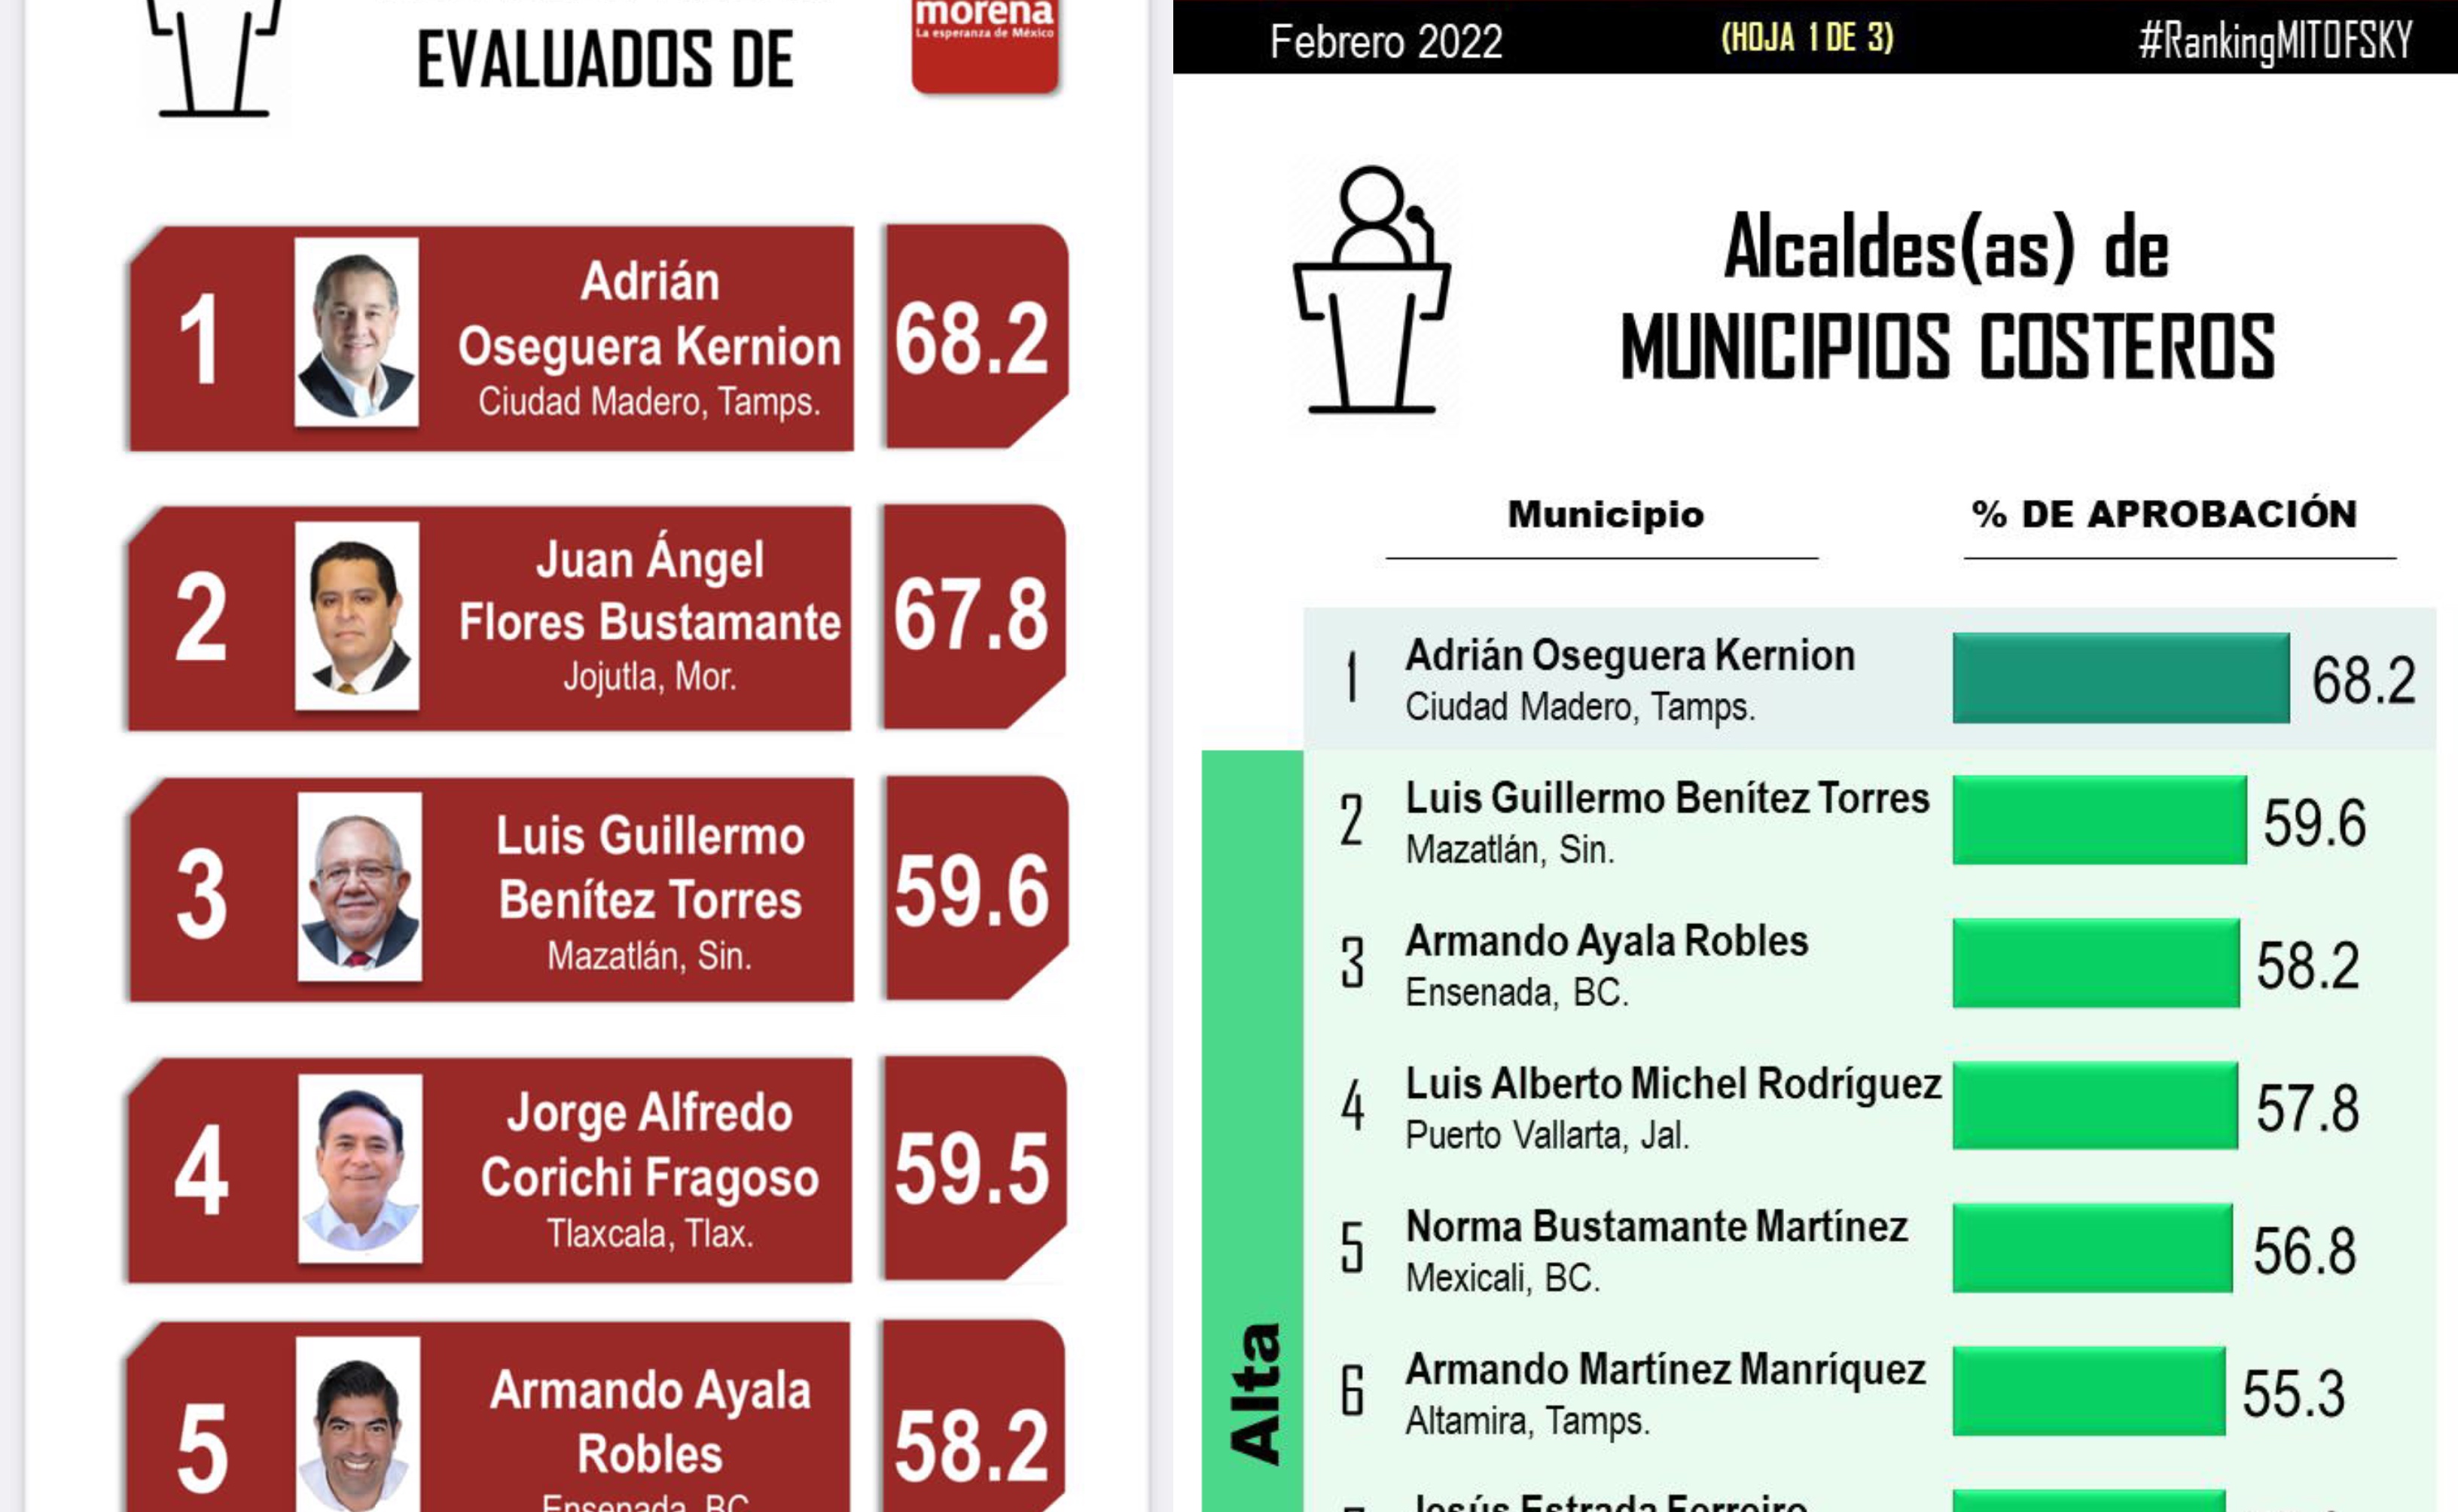 Encuesta ubica a Armando Ayala como el tercer mejor alcalde de municipios costeros